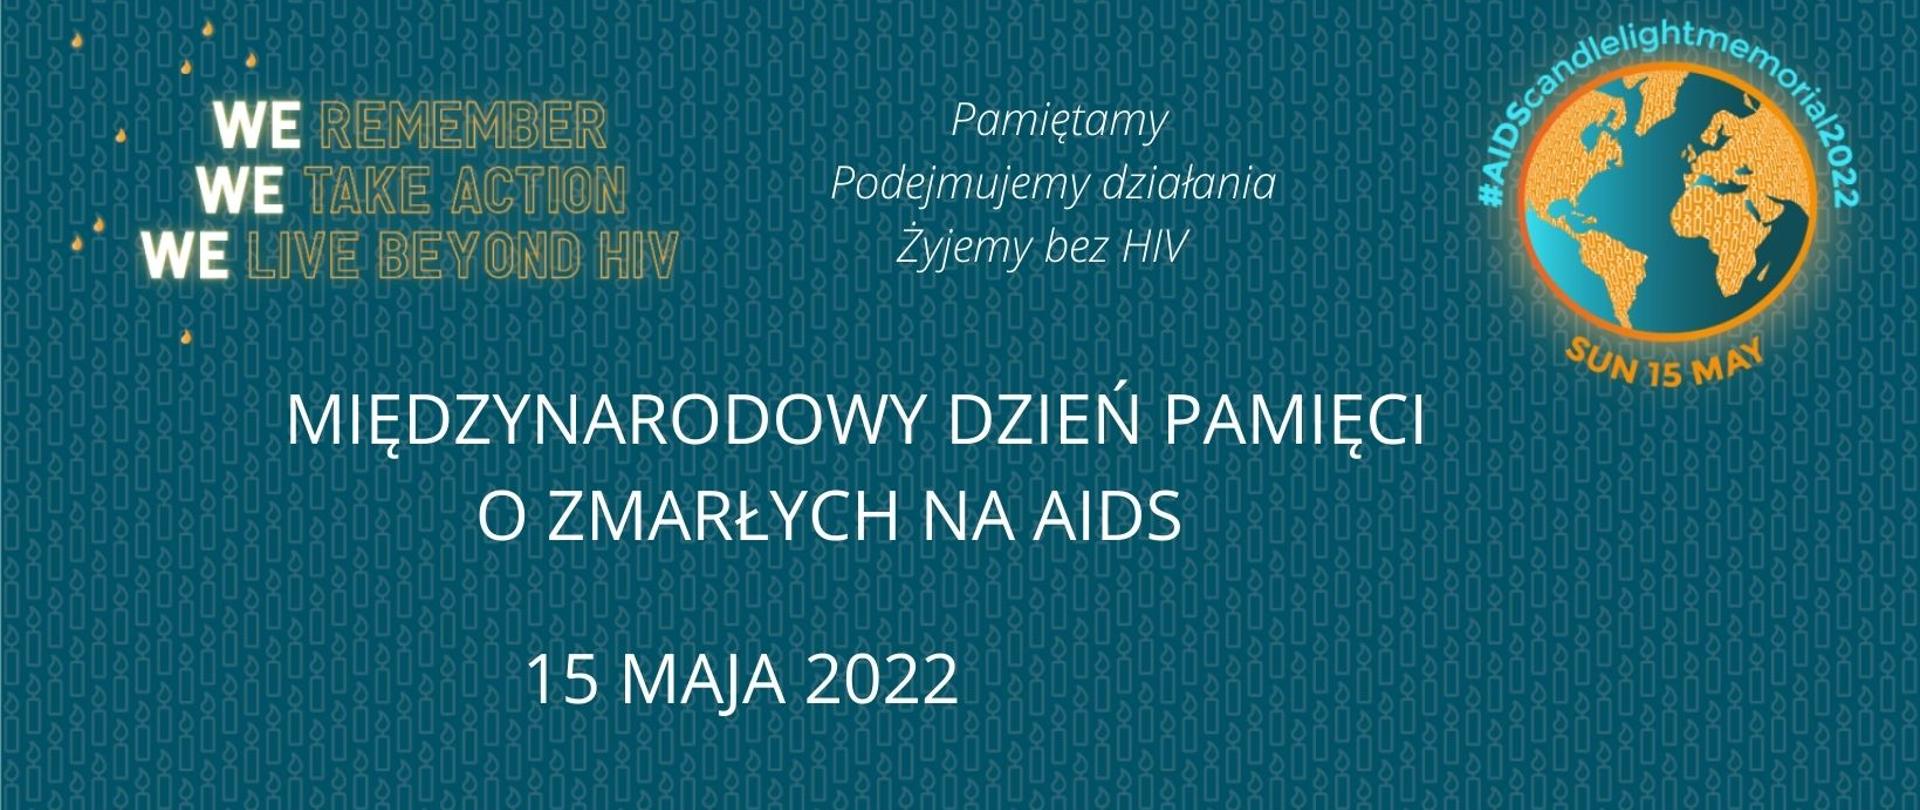 Międzynarodowy Dzień Pamięci o Zmarłych na AIDS - Pamiętamy, Podejmujemy działania, Żyjemy bez HIV 15 maja 2022